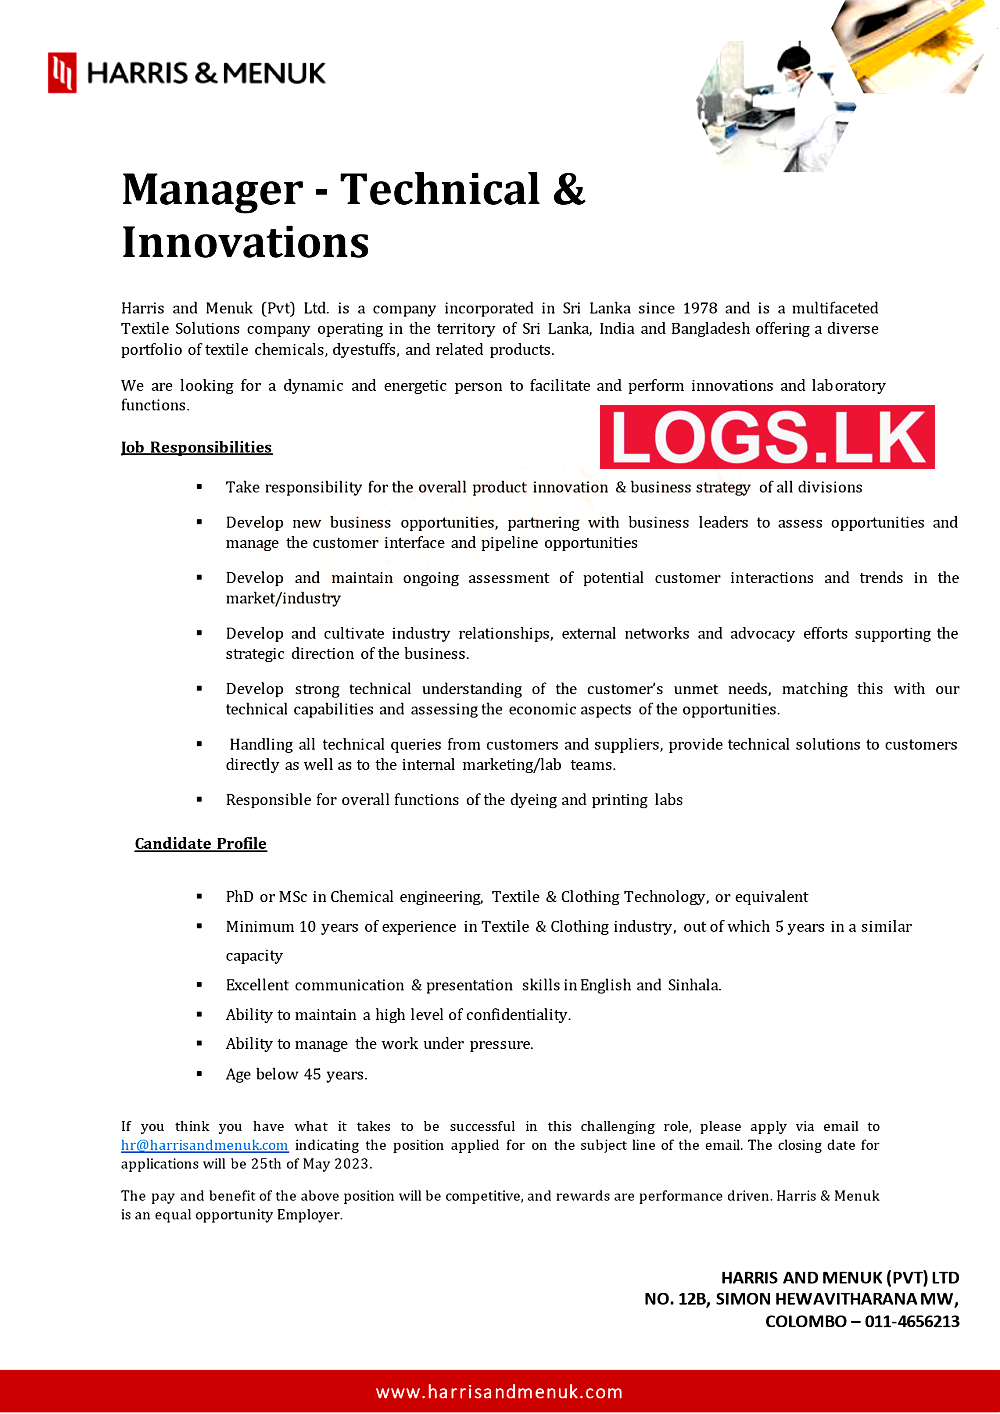 Manager (Technical & Innovations) Job at Harris & Menuk (Pvt) Ltd Job Vacancies